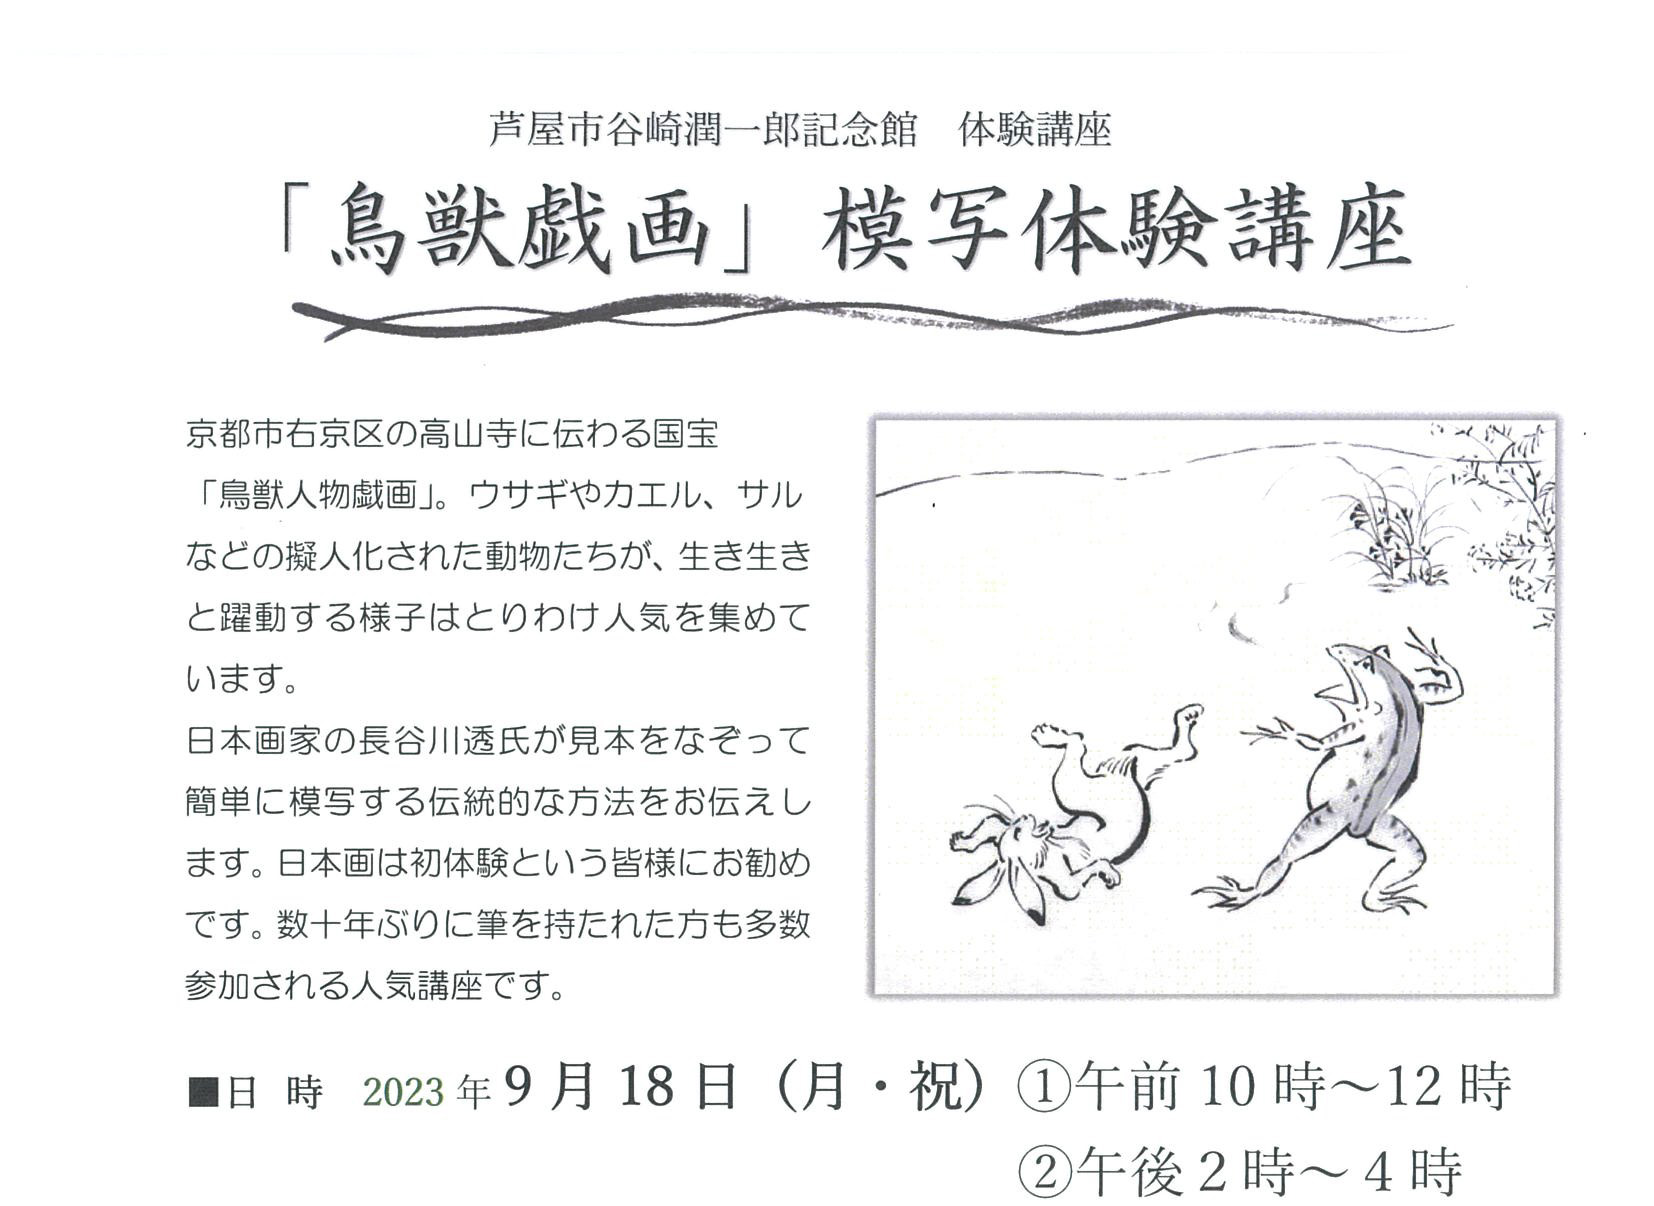 2023年9月18日 芦屋谷崎潤一郎記念館 <br>「鳥獣戯画」模写体験講座